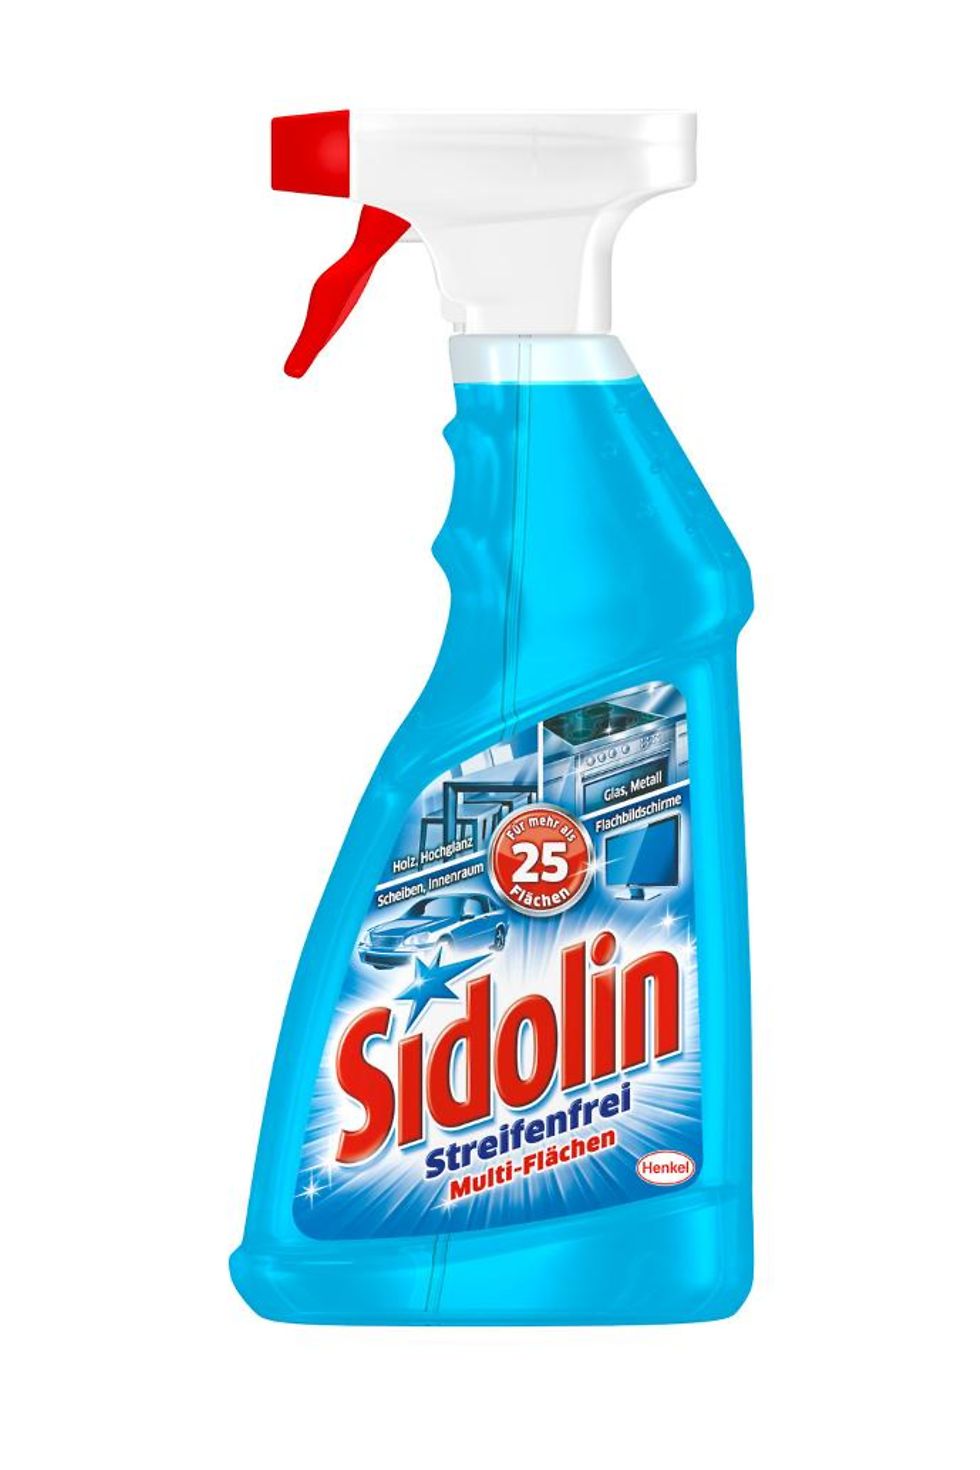 In neuer, transparenter Flasche bietet Sidolin Multi-Flächen streifenfreie Reinigung und Glanz für mehr als 25 Oberflächen im ganzen Haus und selbst im Auto